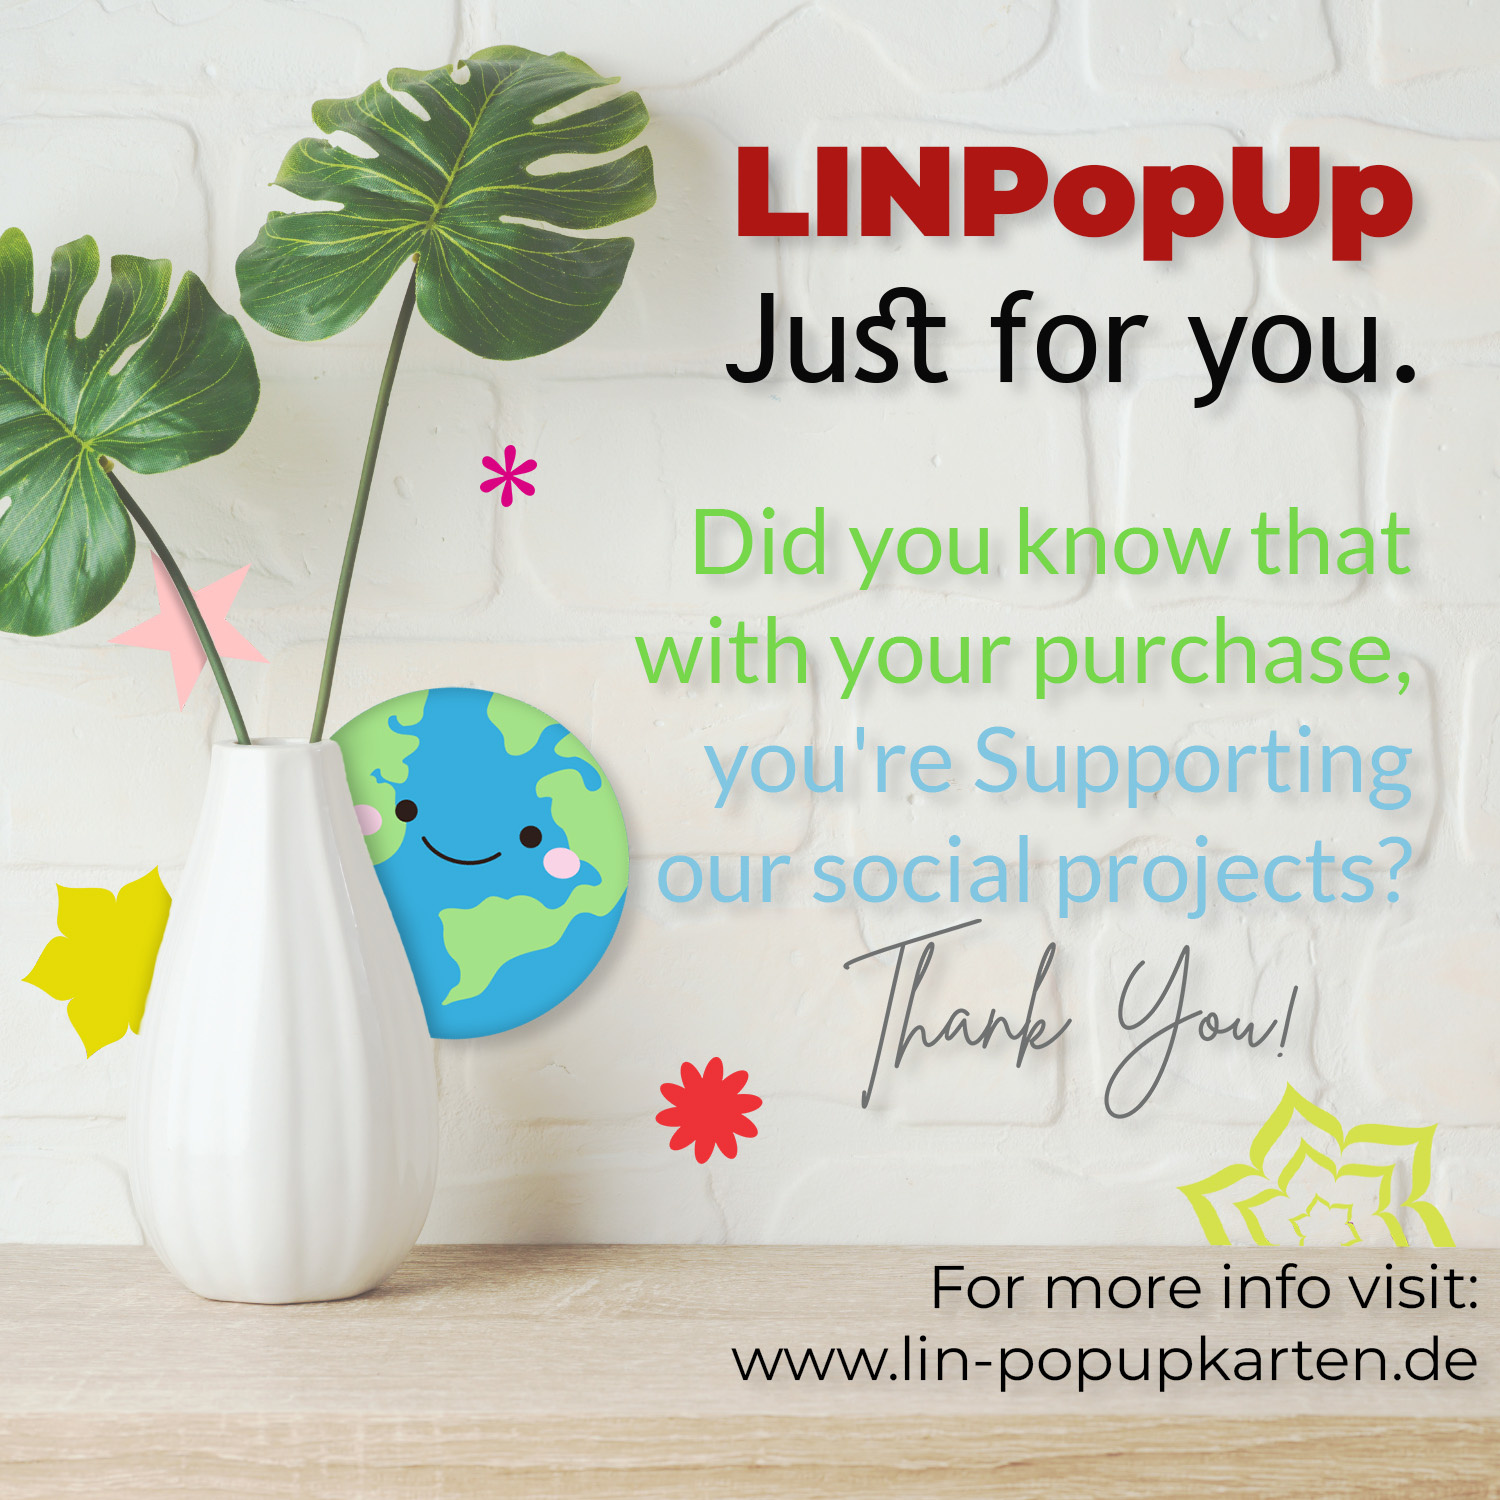 LINPOPUP Pop Up 3D Karte, Geburtstagskarte, Glückwunschkarte Muttertag, Blumen Bunt, Herbstbaum, LINPopUp®, N47